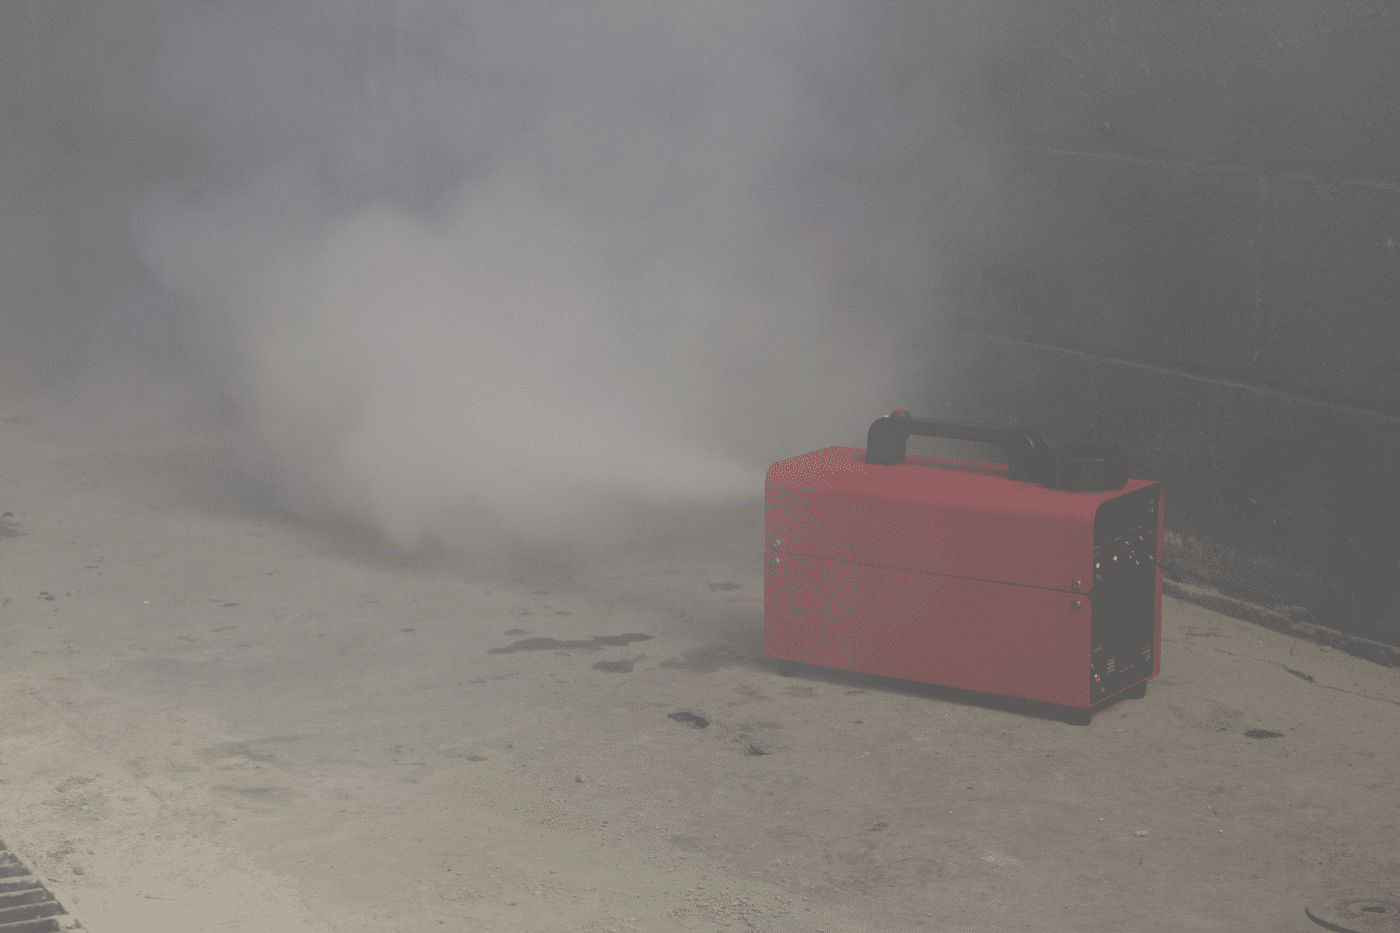 Générateur de fumée SG 1000 (VICO), matériel pompier